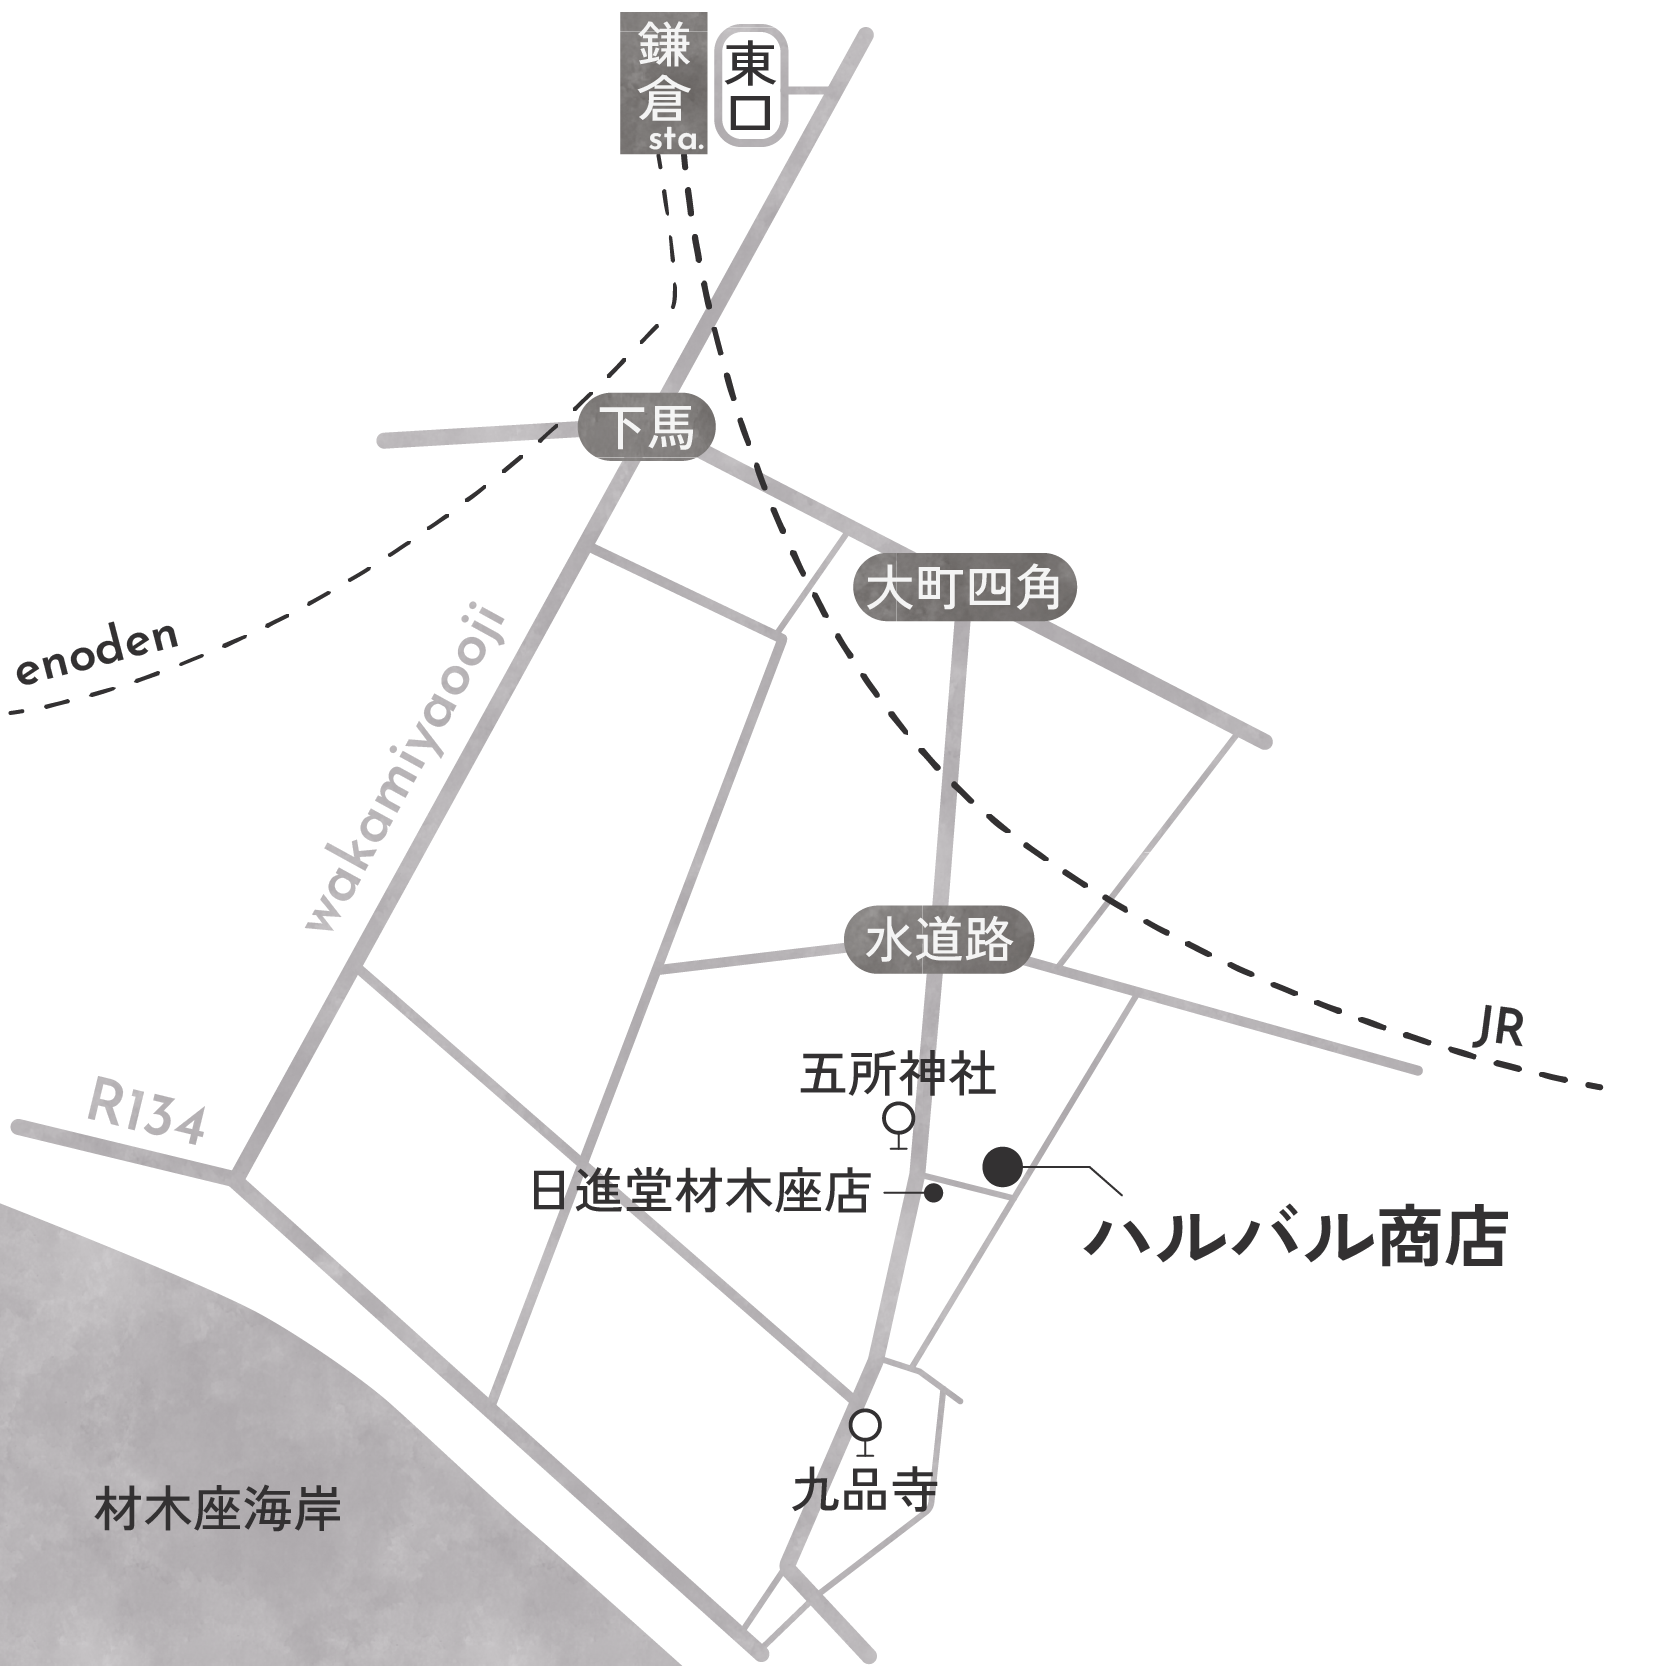 ハルバル商店マップ